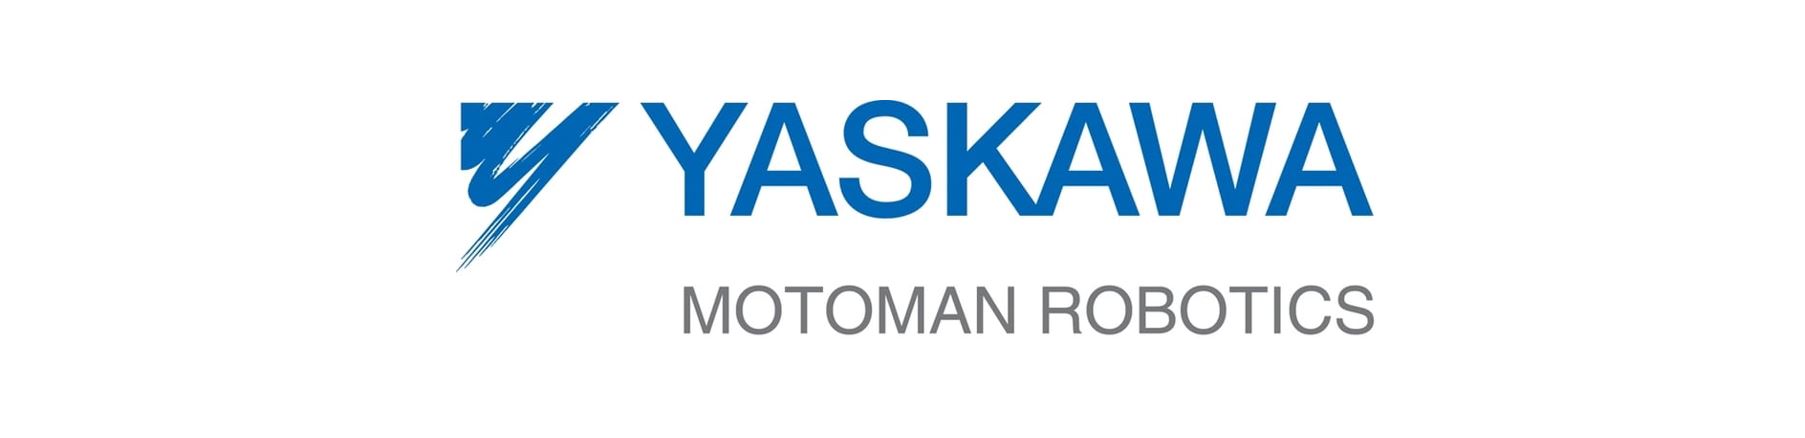 Yaskawa_logo-1.jpg